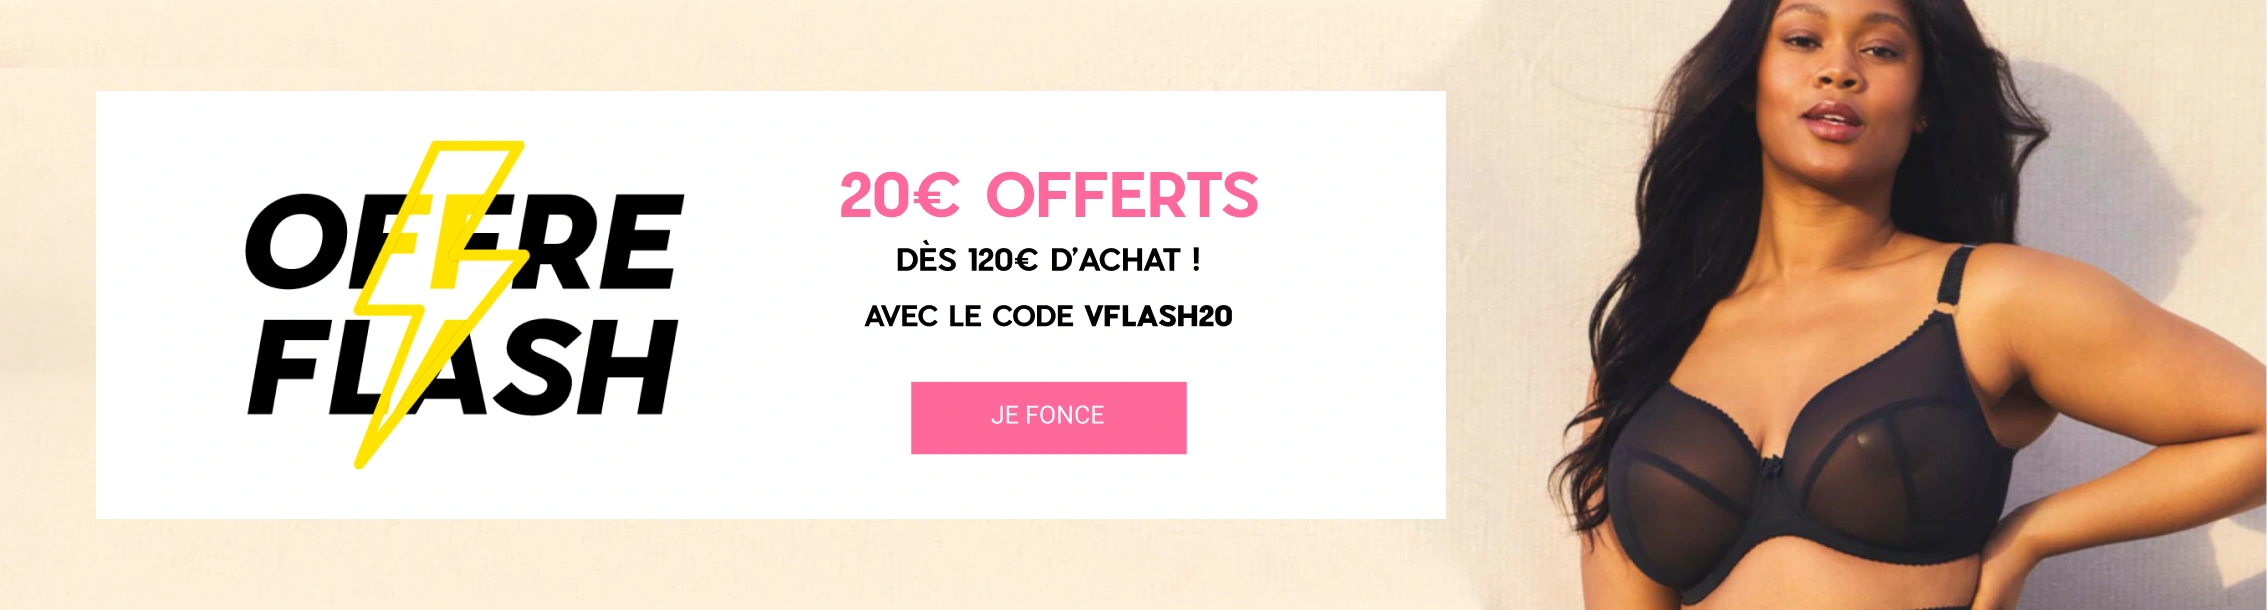 Vente flash : 20€ offerts dès 120€ d'achat !